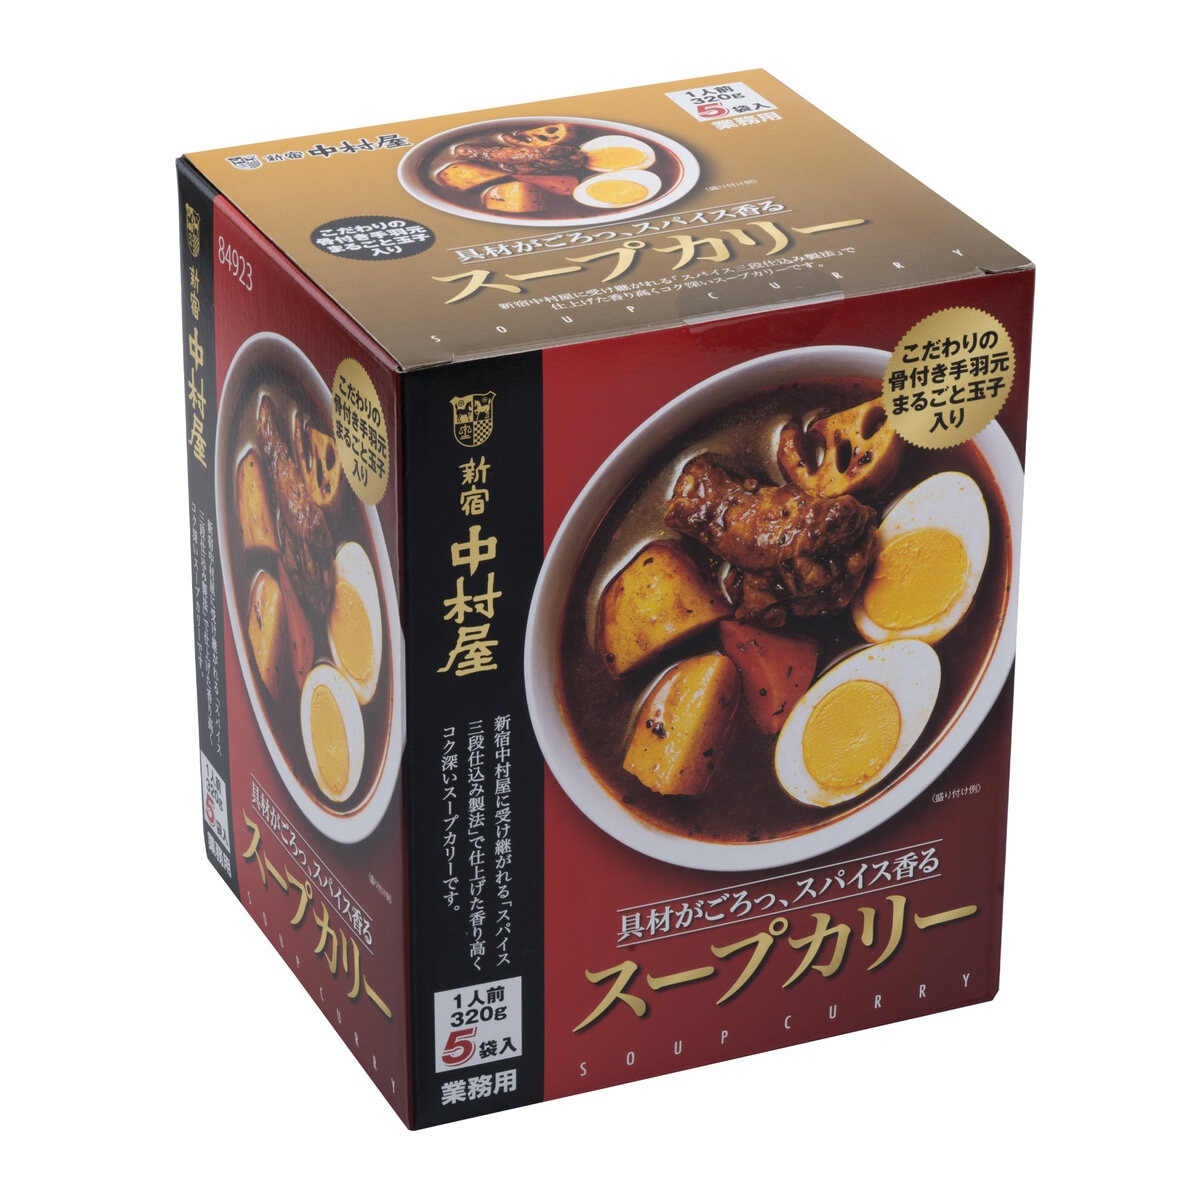 新宿中村屋 スープカリー 320g x 5パック Costco Japan